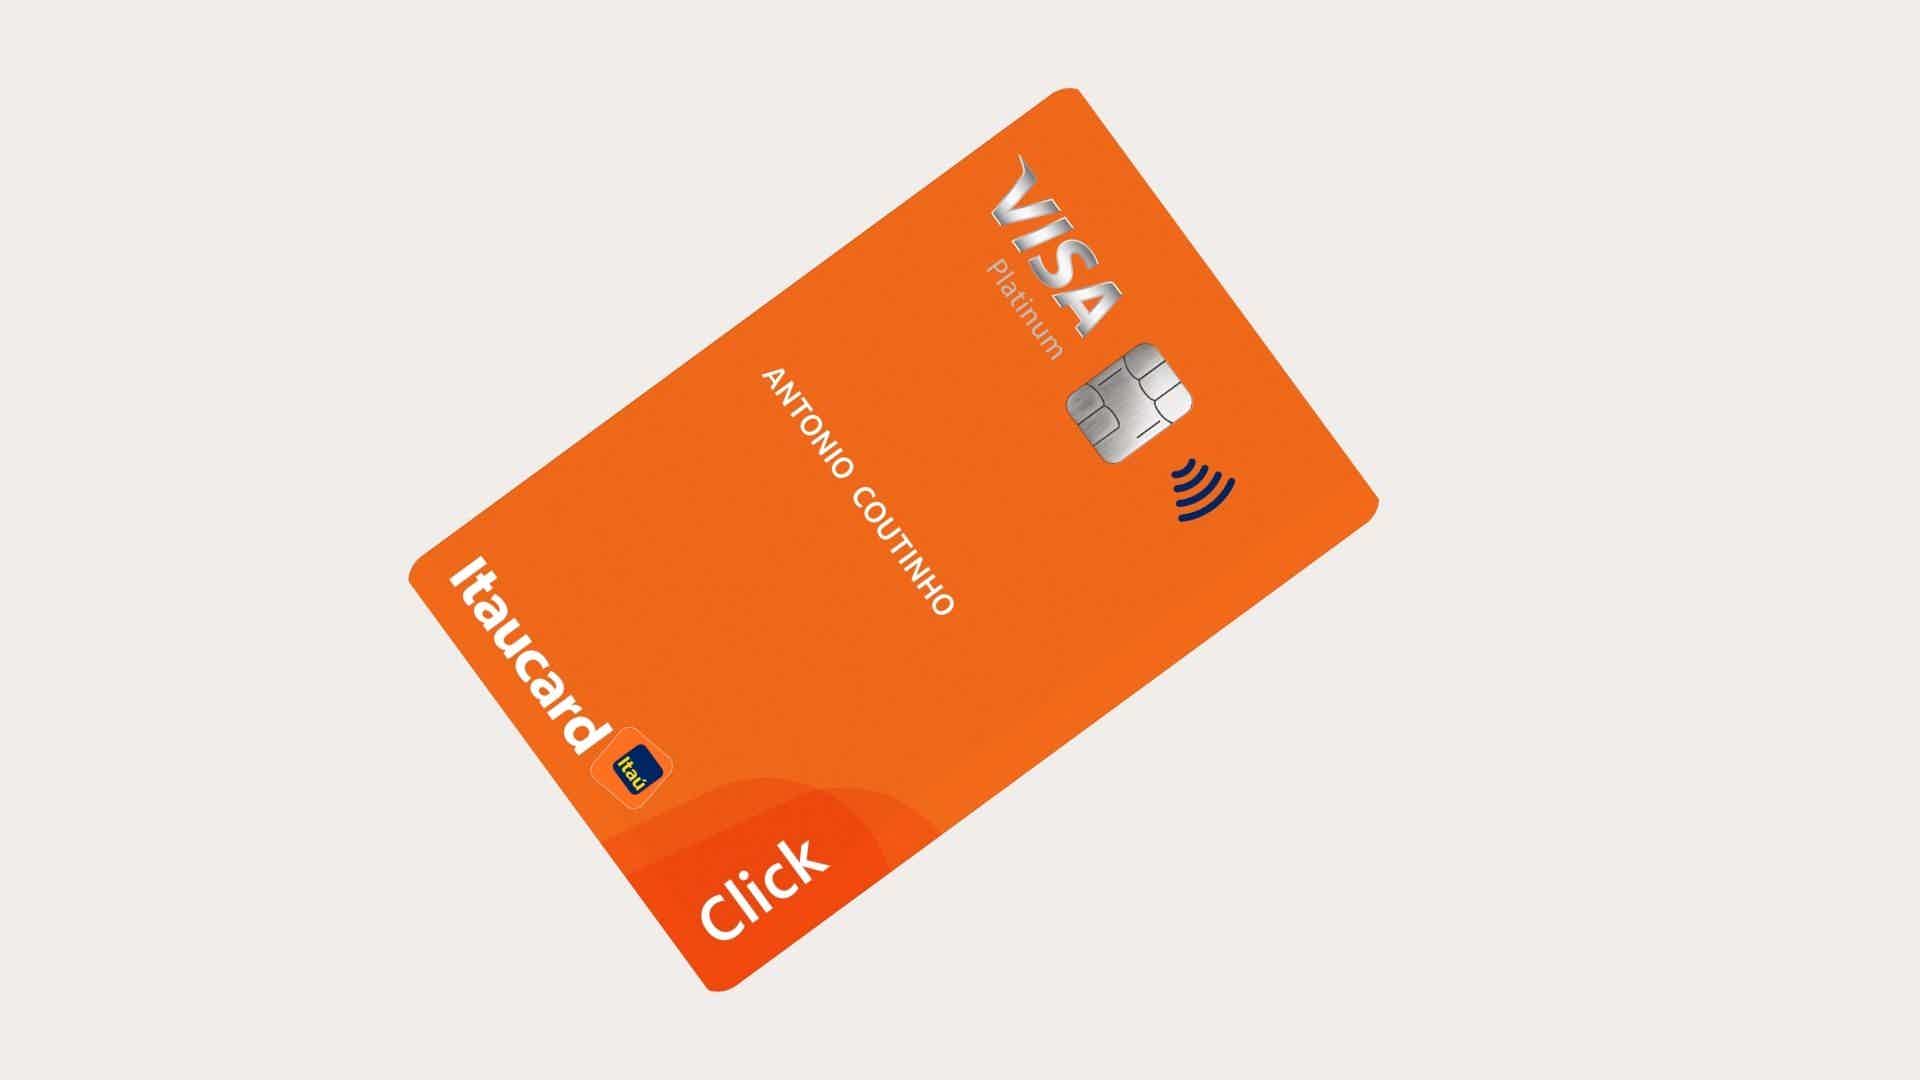 Mas, afinal, como solicitar o cartão Itaucard Click Visa Platinum? Fonte: Itaú.